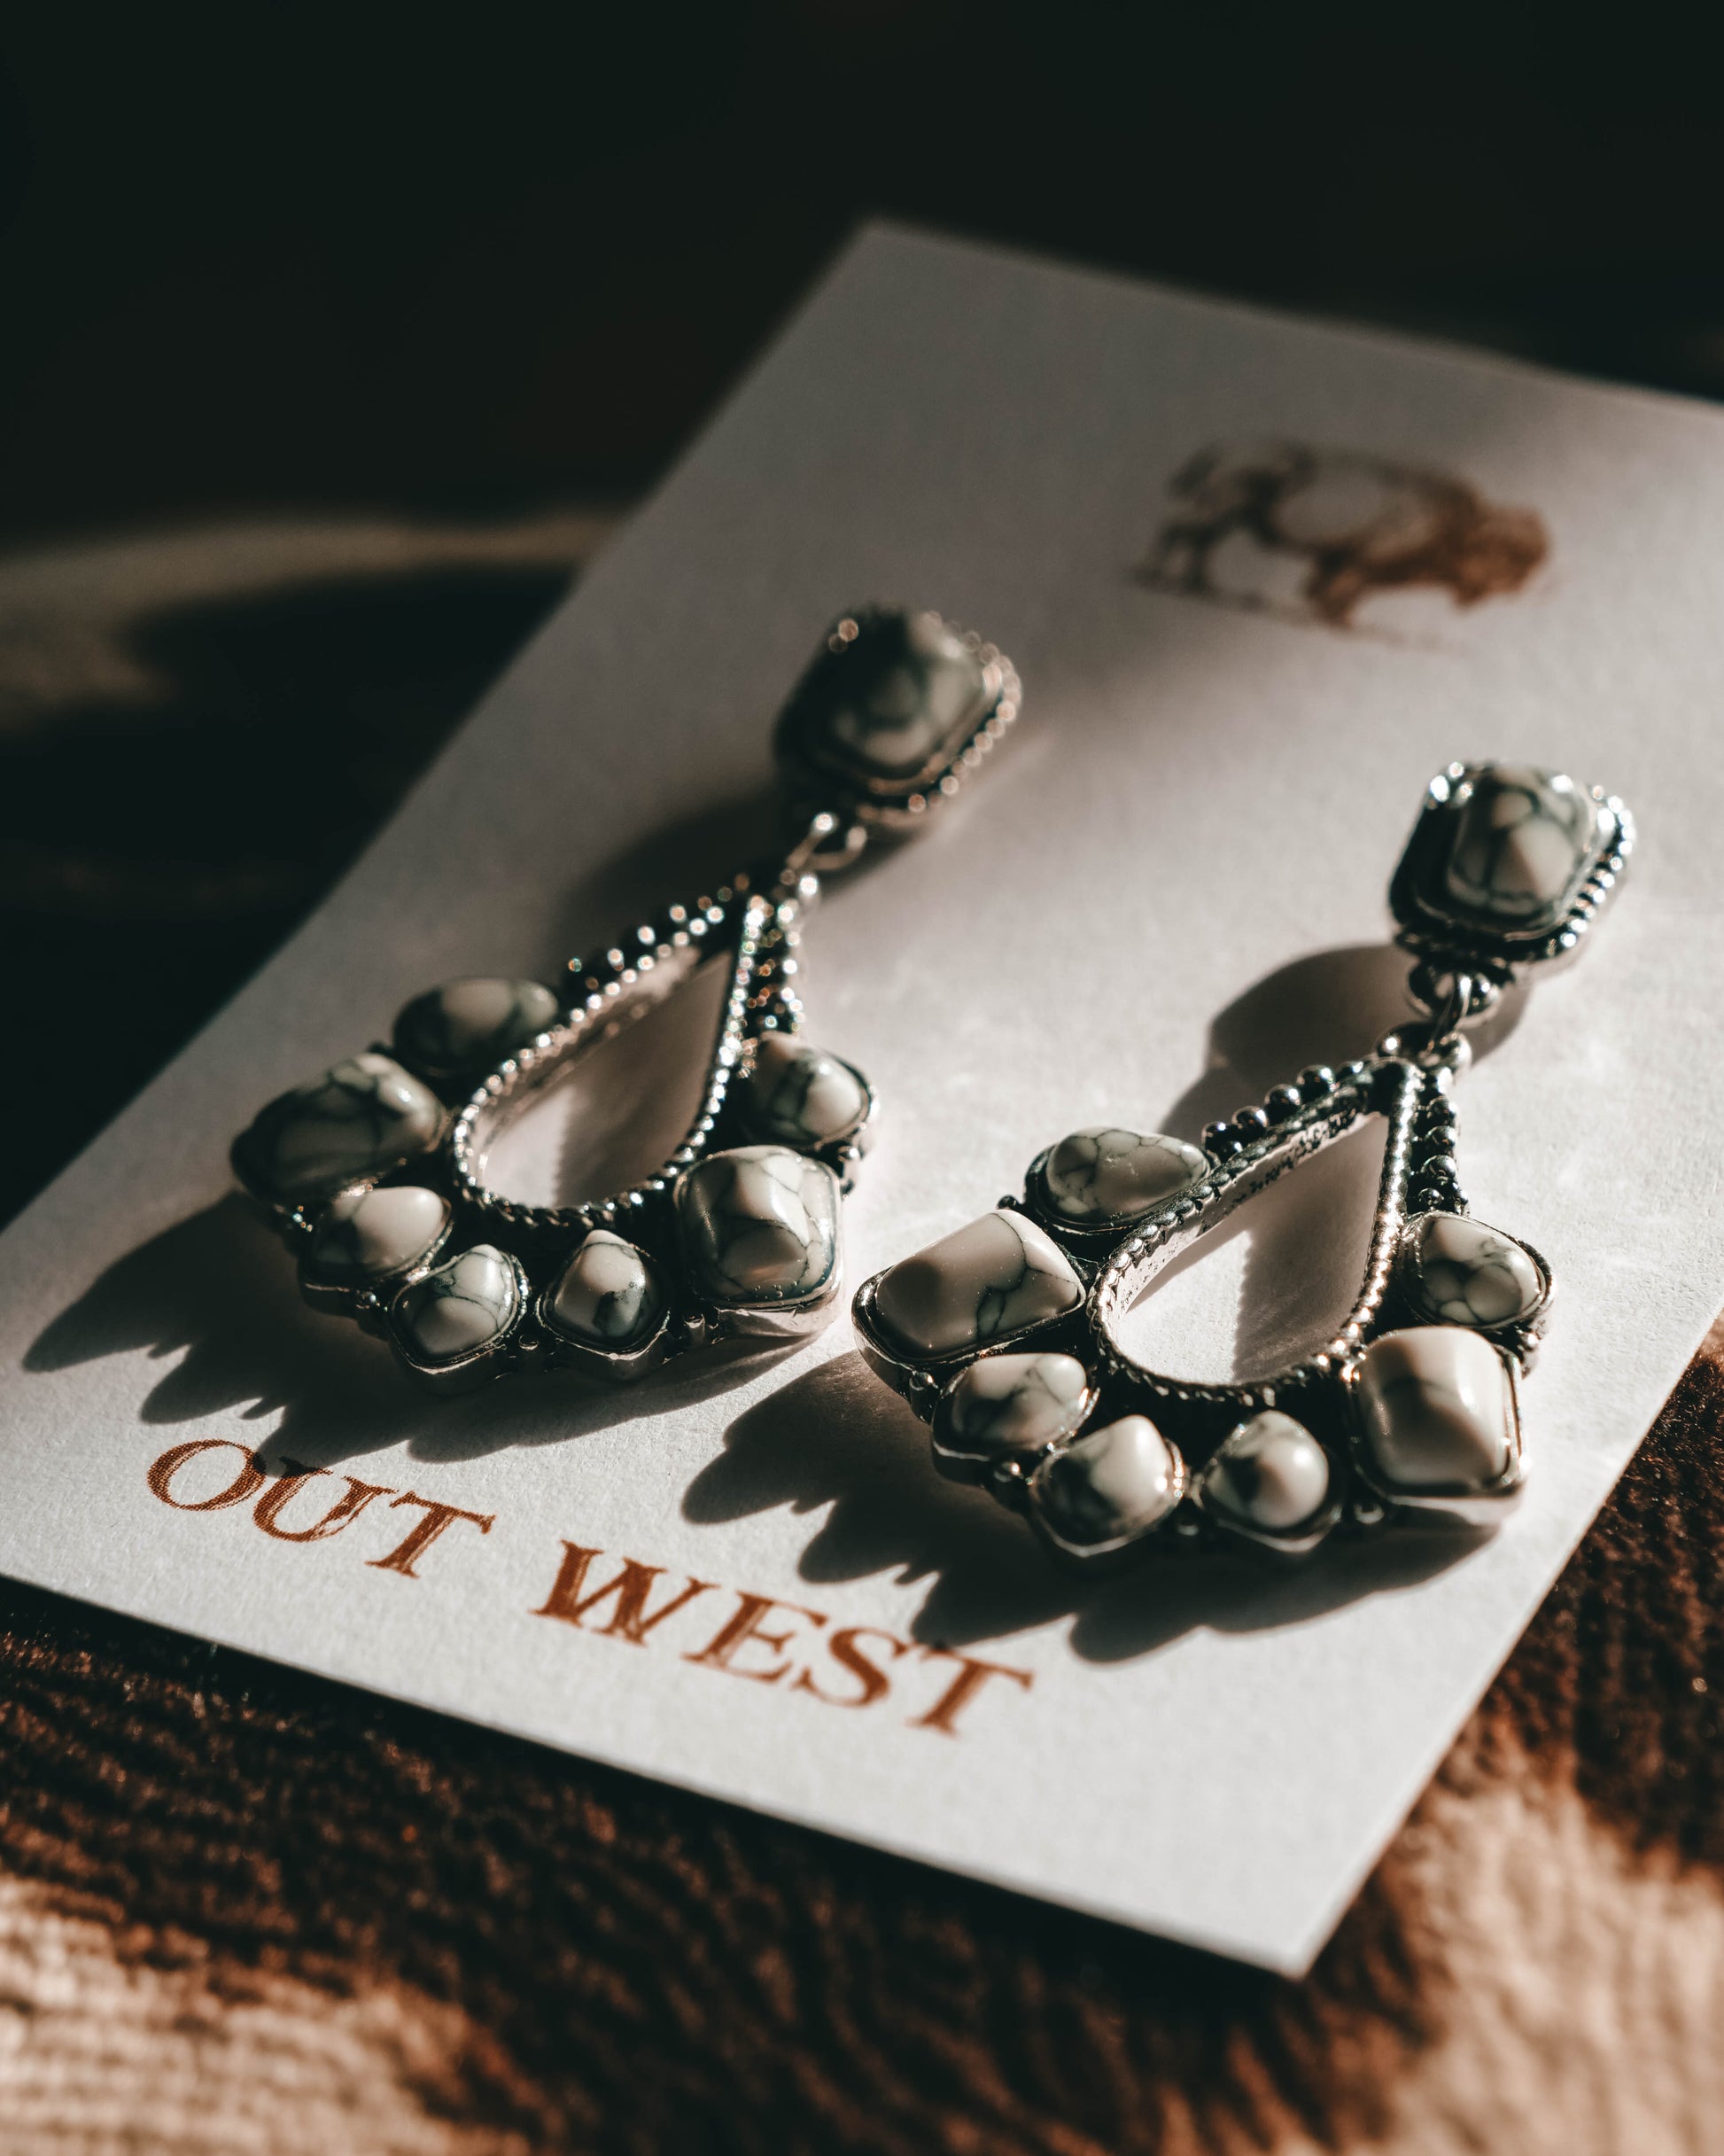 Out West  Rock n' Roll class earings | white western jewelery cowgirl earrings